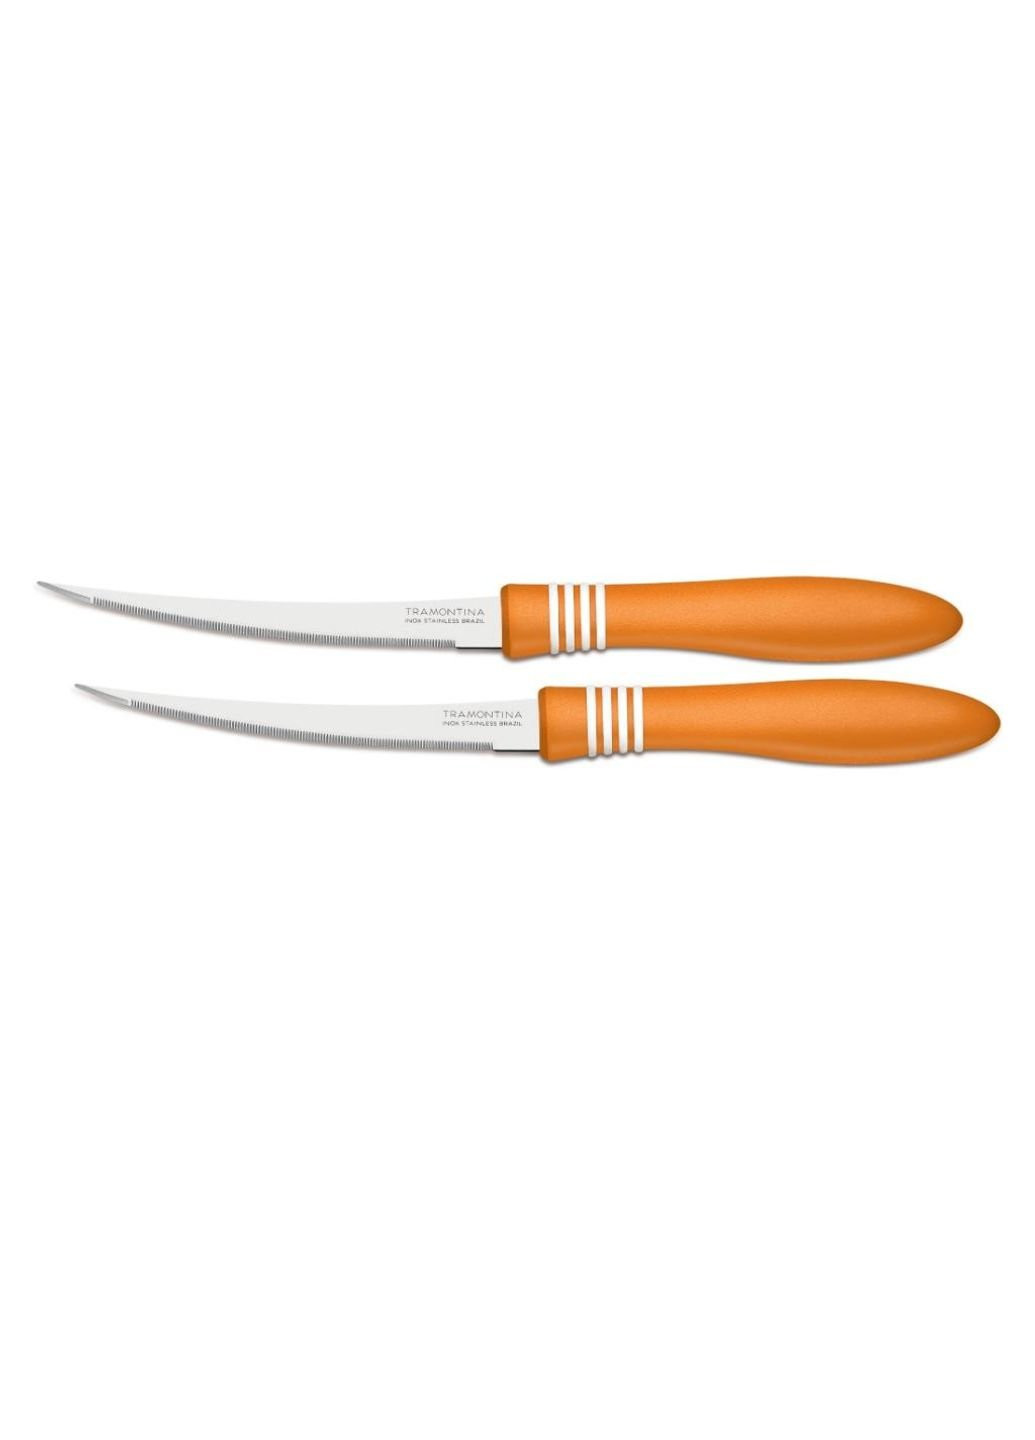 Набор ножей COR & COR для томатов 2шт 127 мм Orange (23462/245) Tramontina оранжевые,